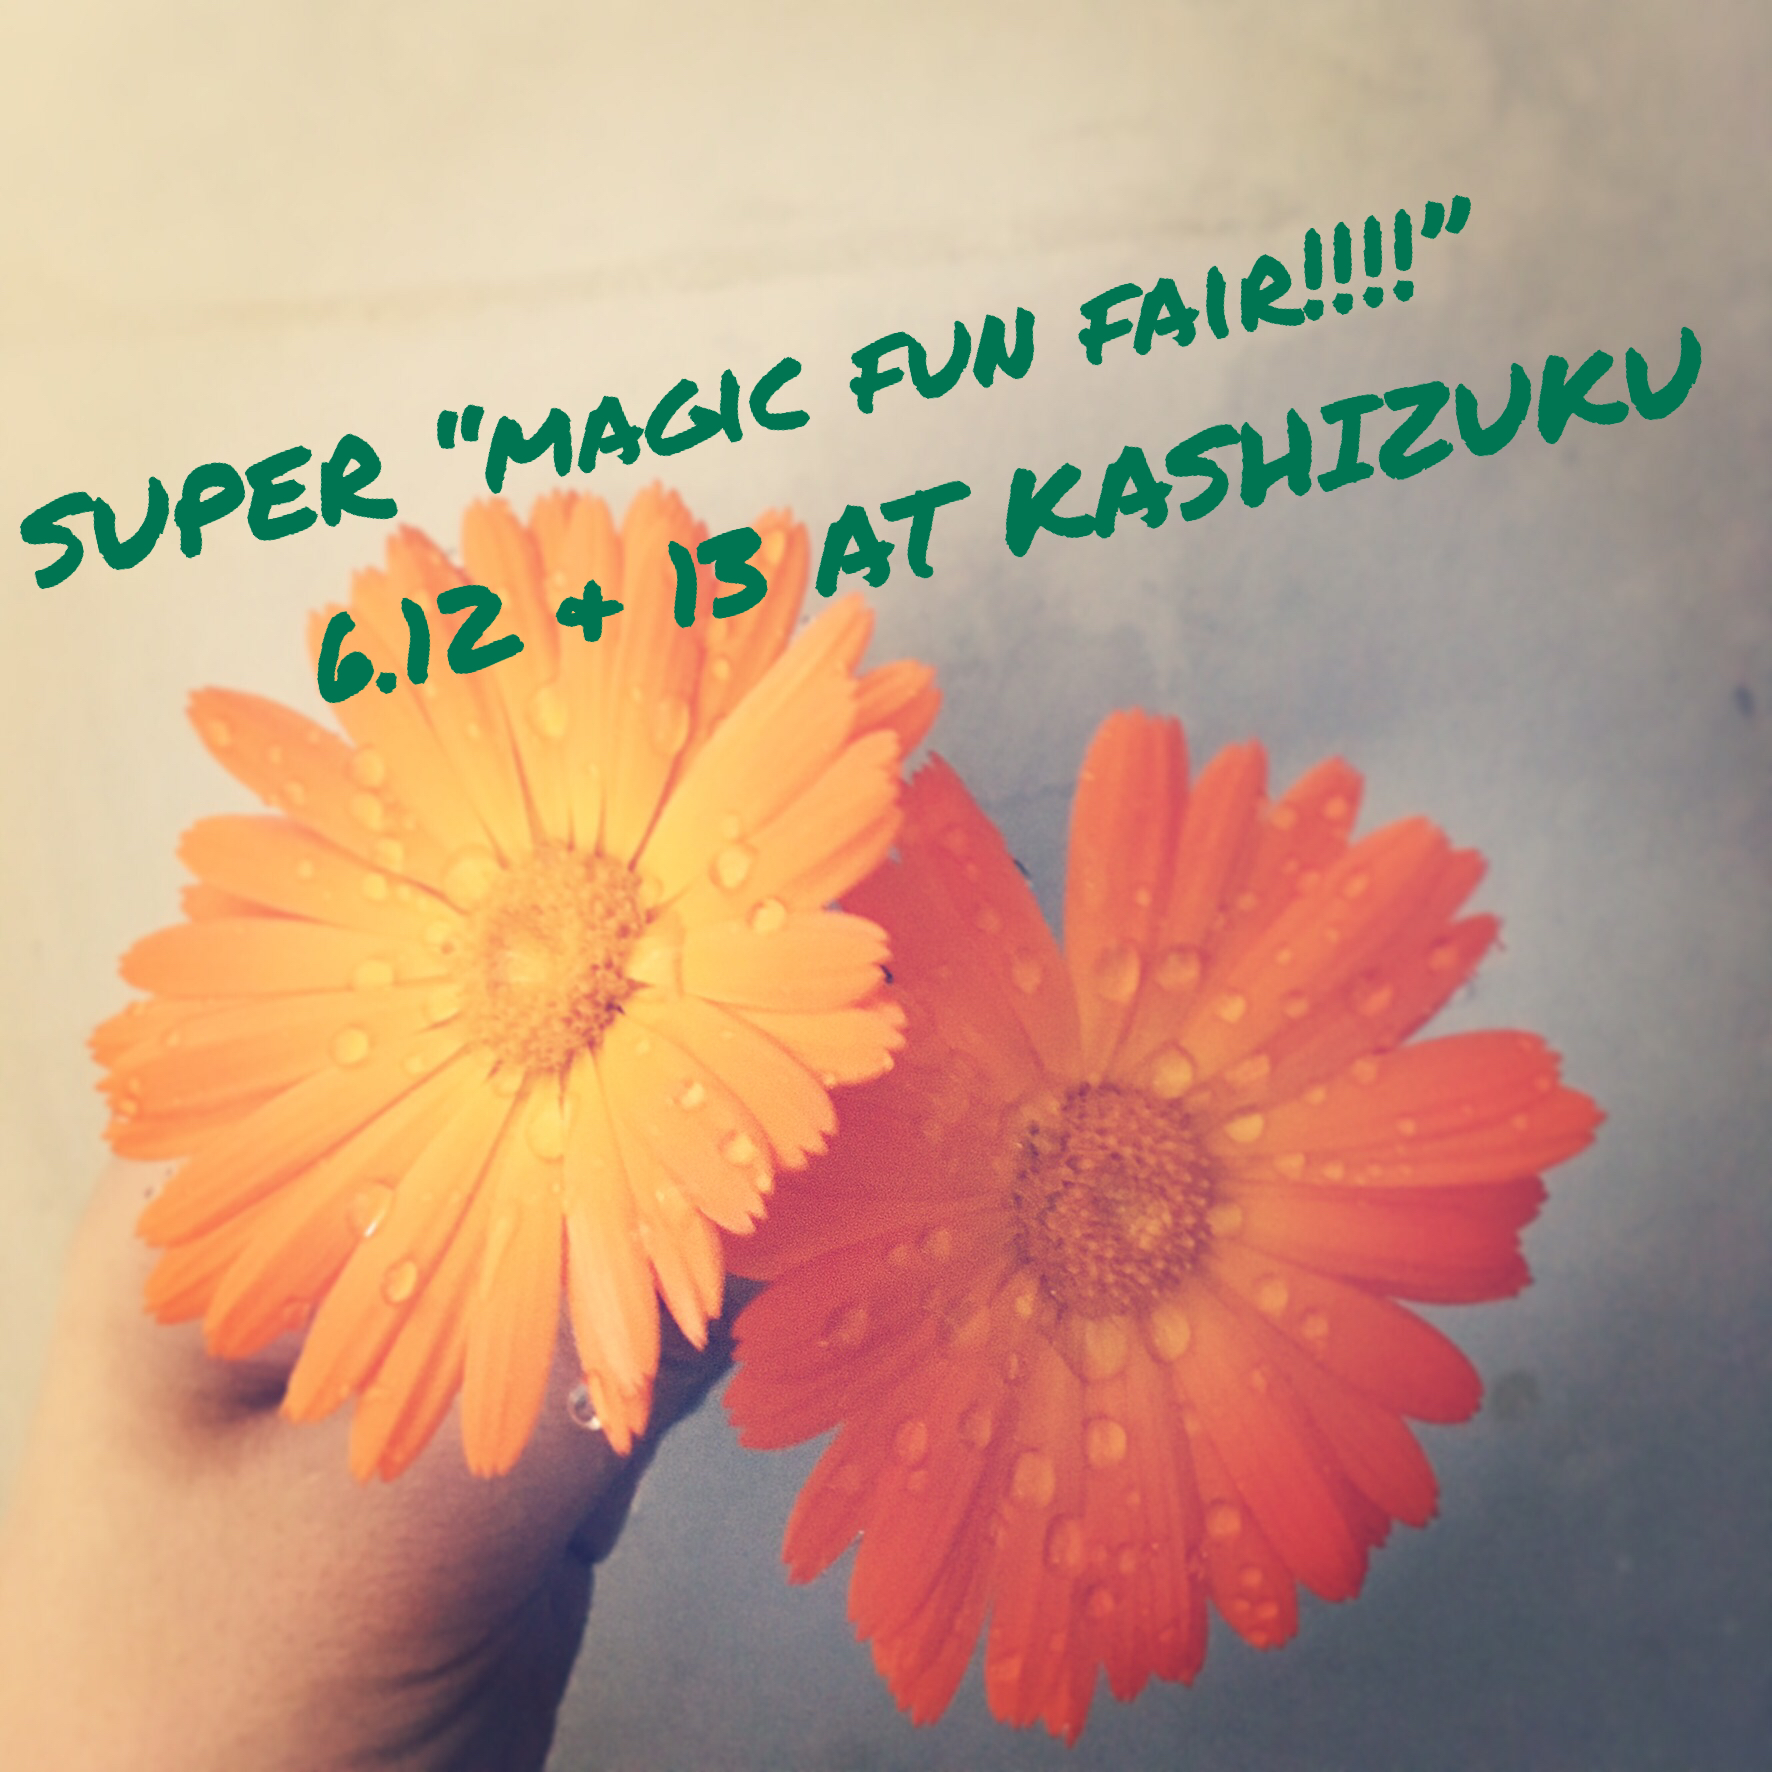 SUPER "magic fun fair!!!!" VOL.2